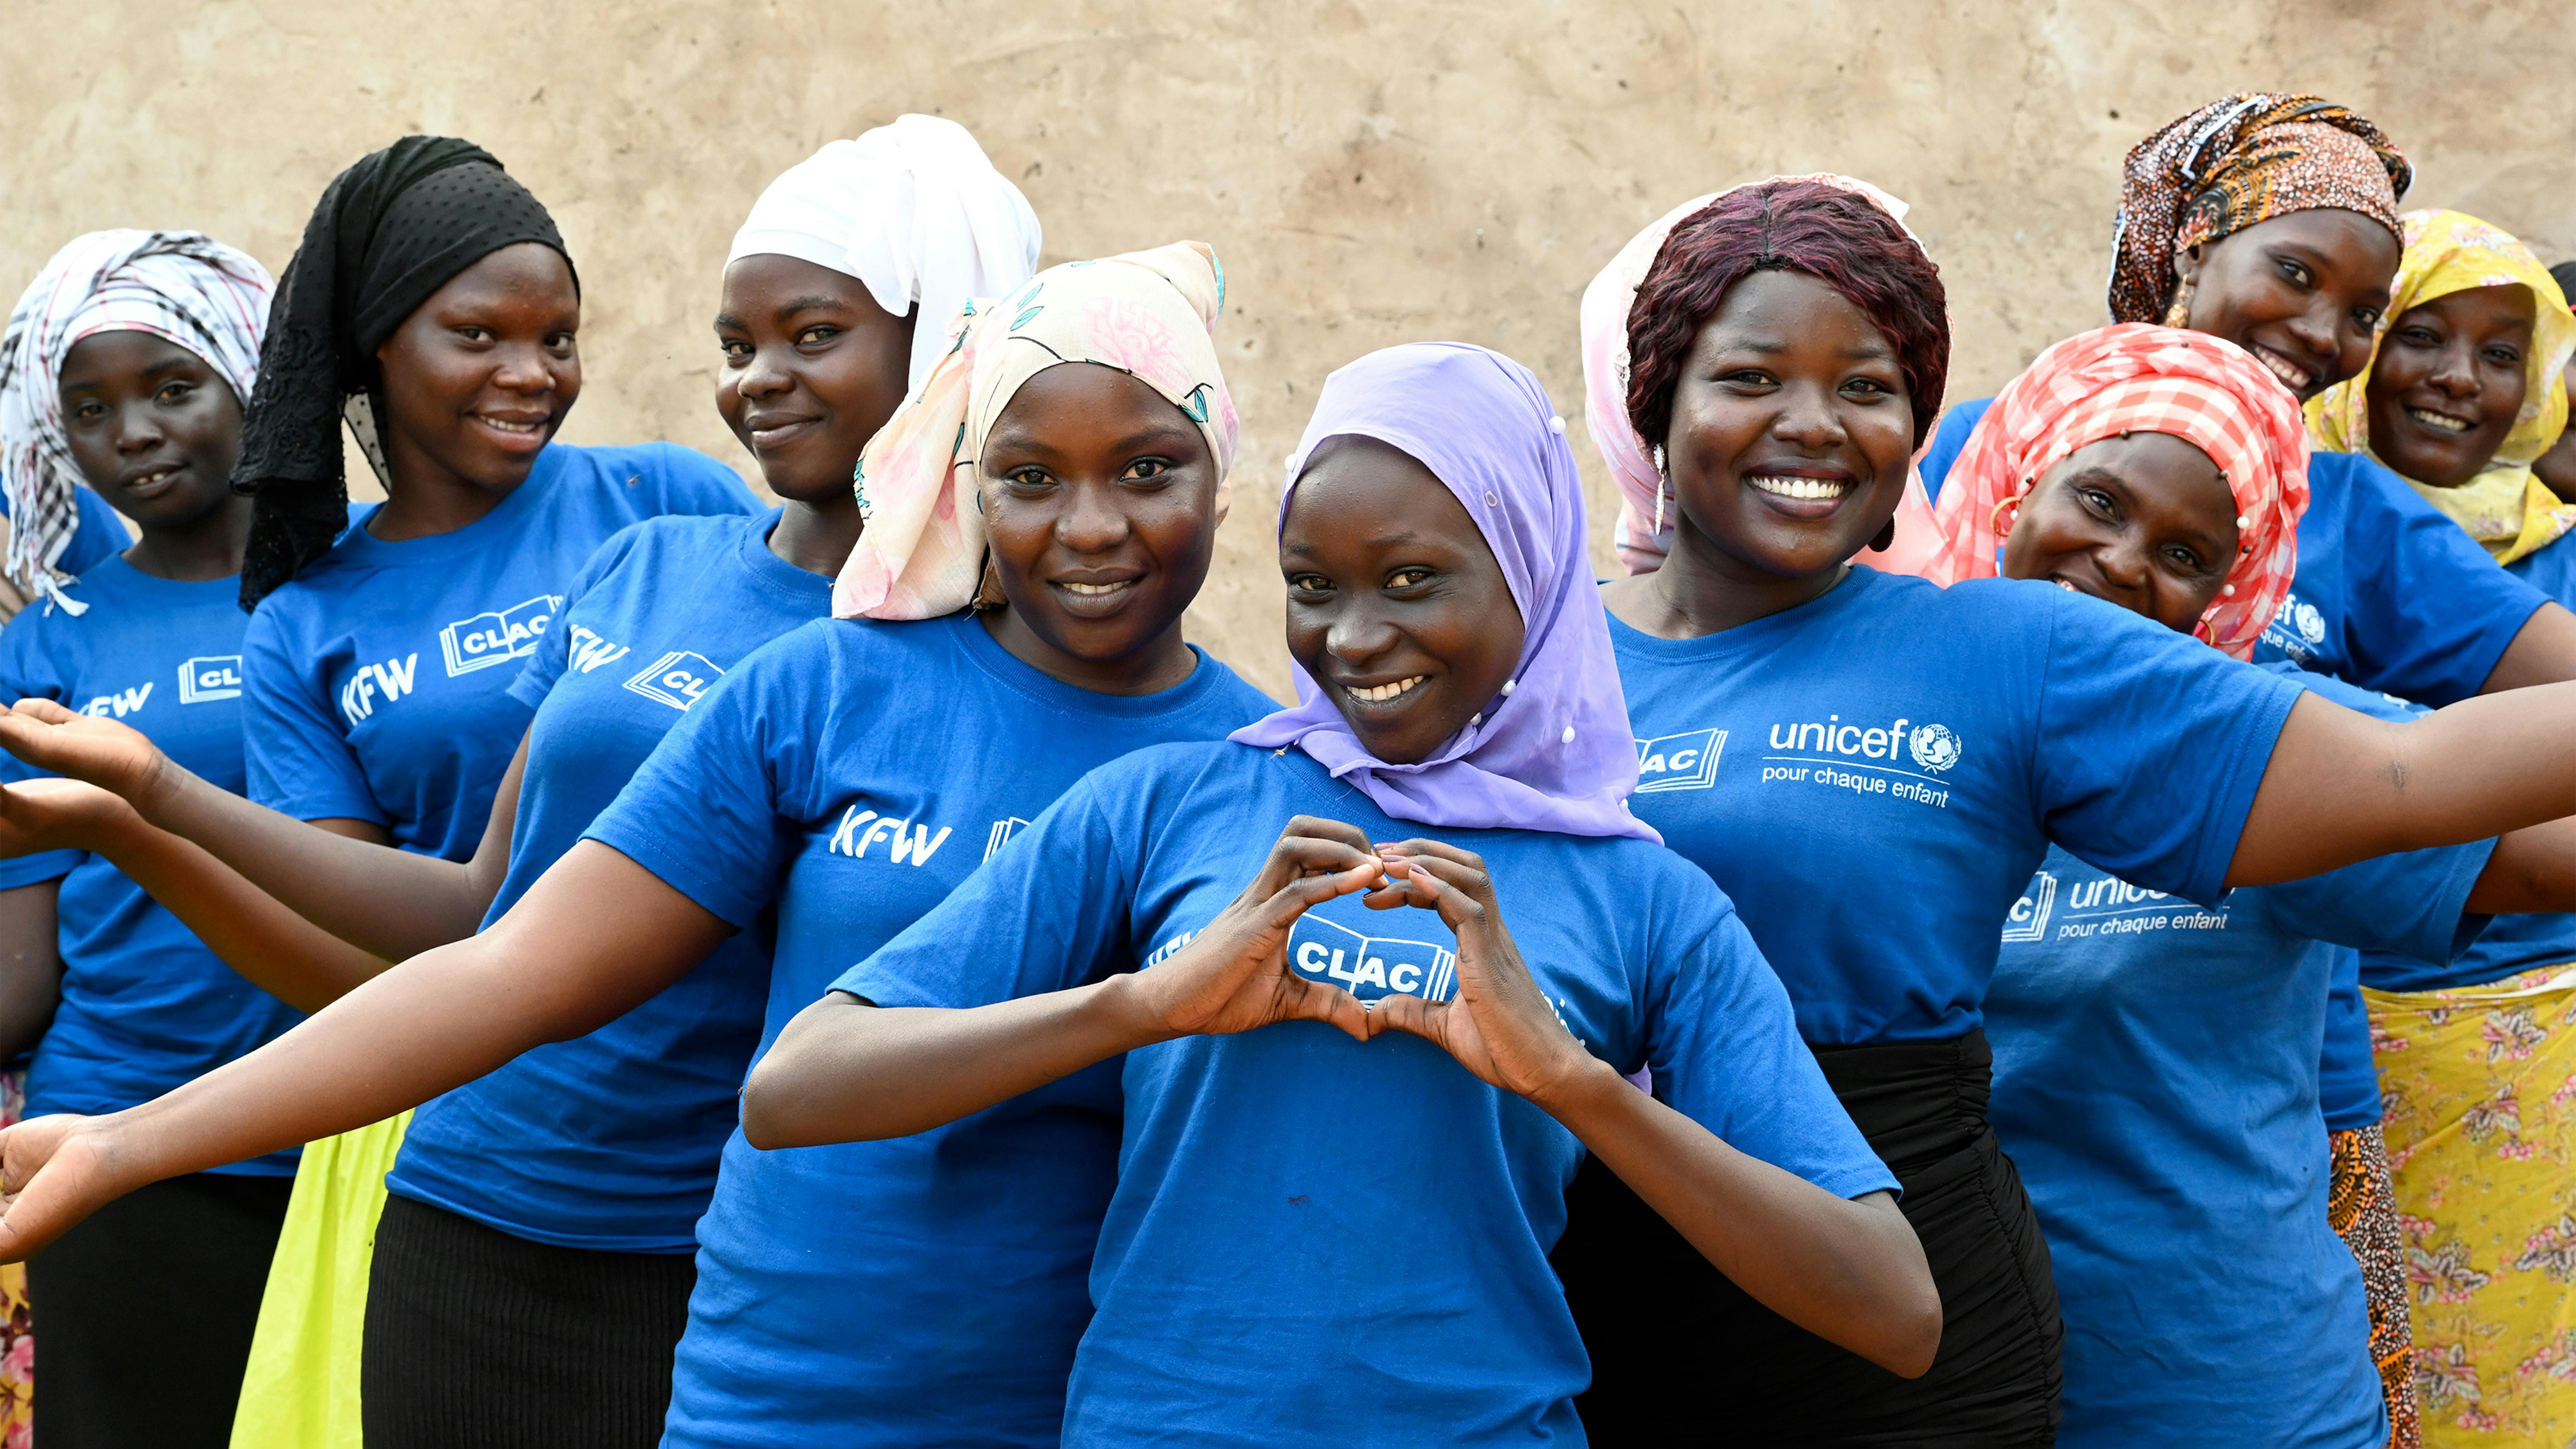 Un gruppo di ragazze chiamate Super Banat che lavorano nell'ambito del CLAC (Centro per la lettura e le attività culturali) sono sostenute tecnicamente e finanziariamente dall'UNICEF.